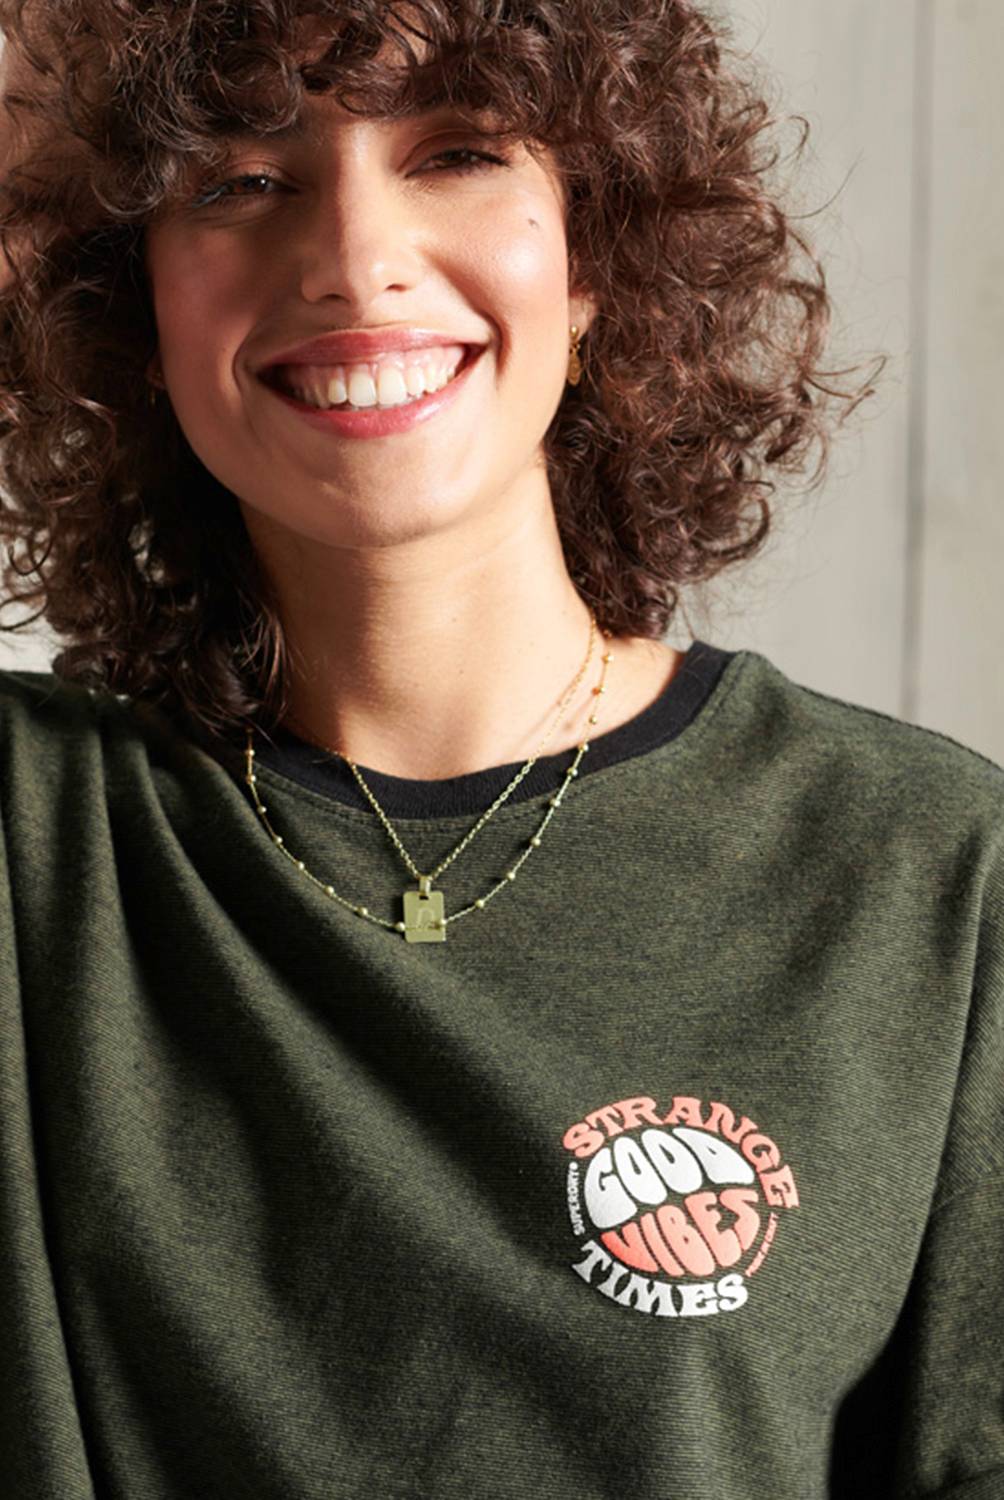 SUPERDRY - Camiseta de Corte Cuadrado Militar Narrative Mujer